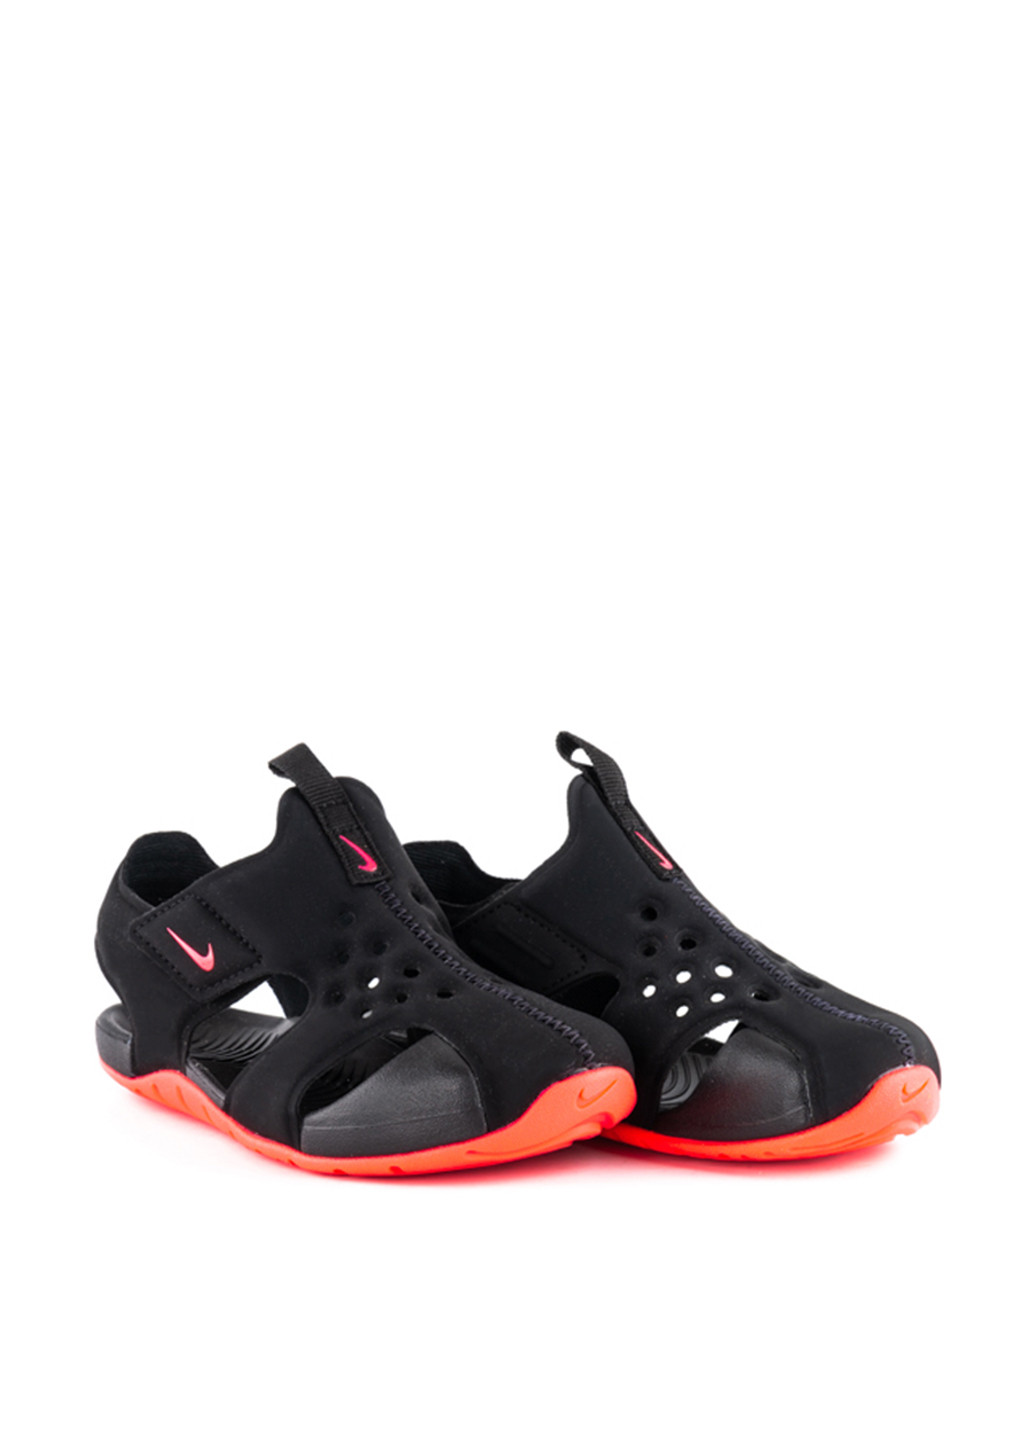 Черные спортивные сандалии Nike на липучке